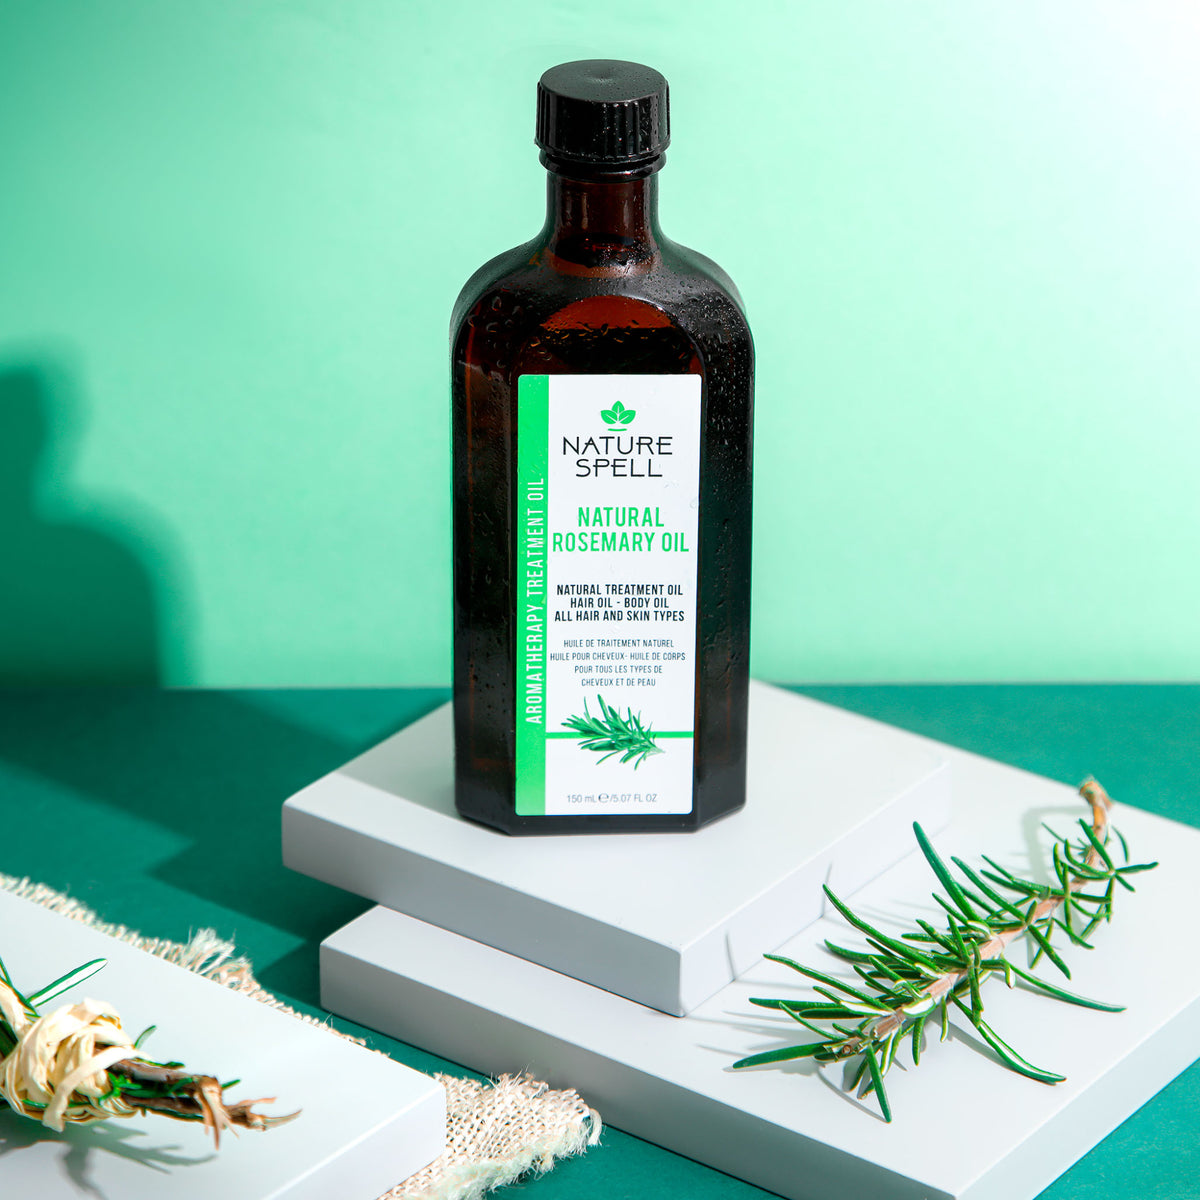 Nature Spell Rosemary Oil For Hair & Skin